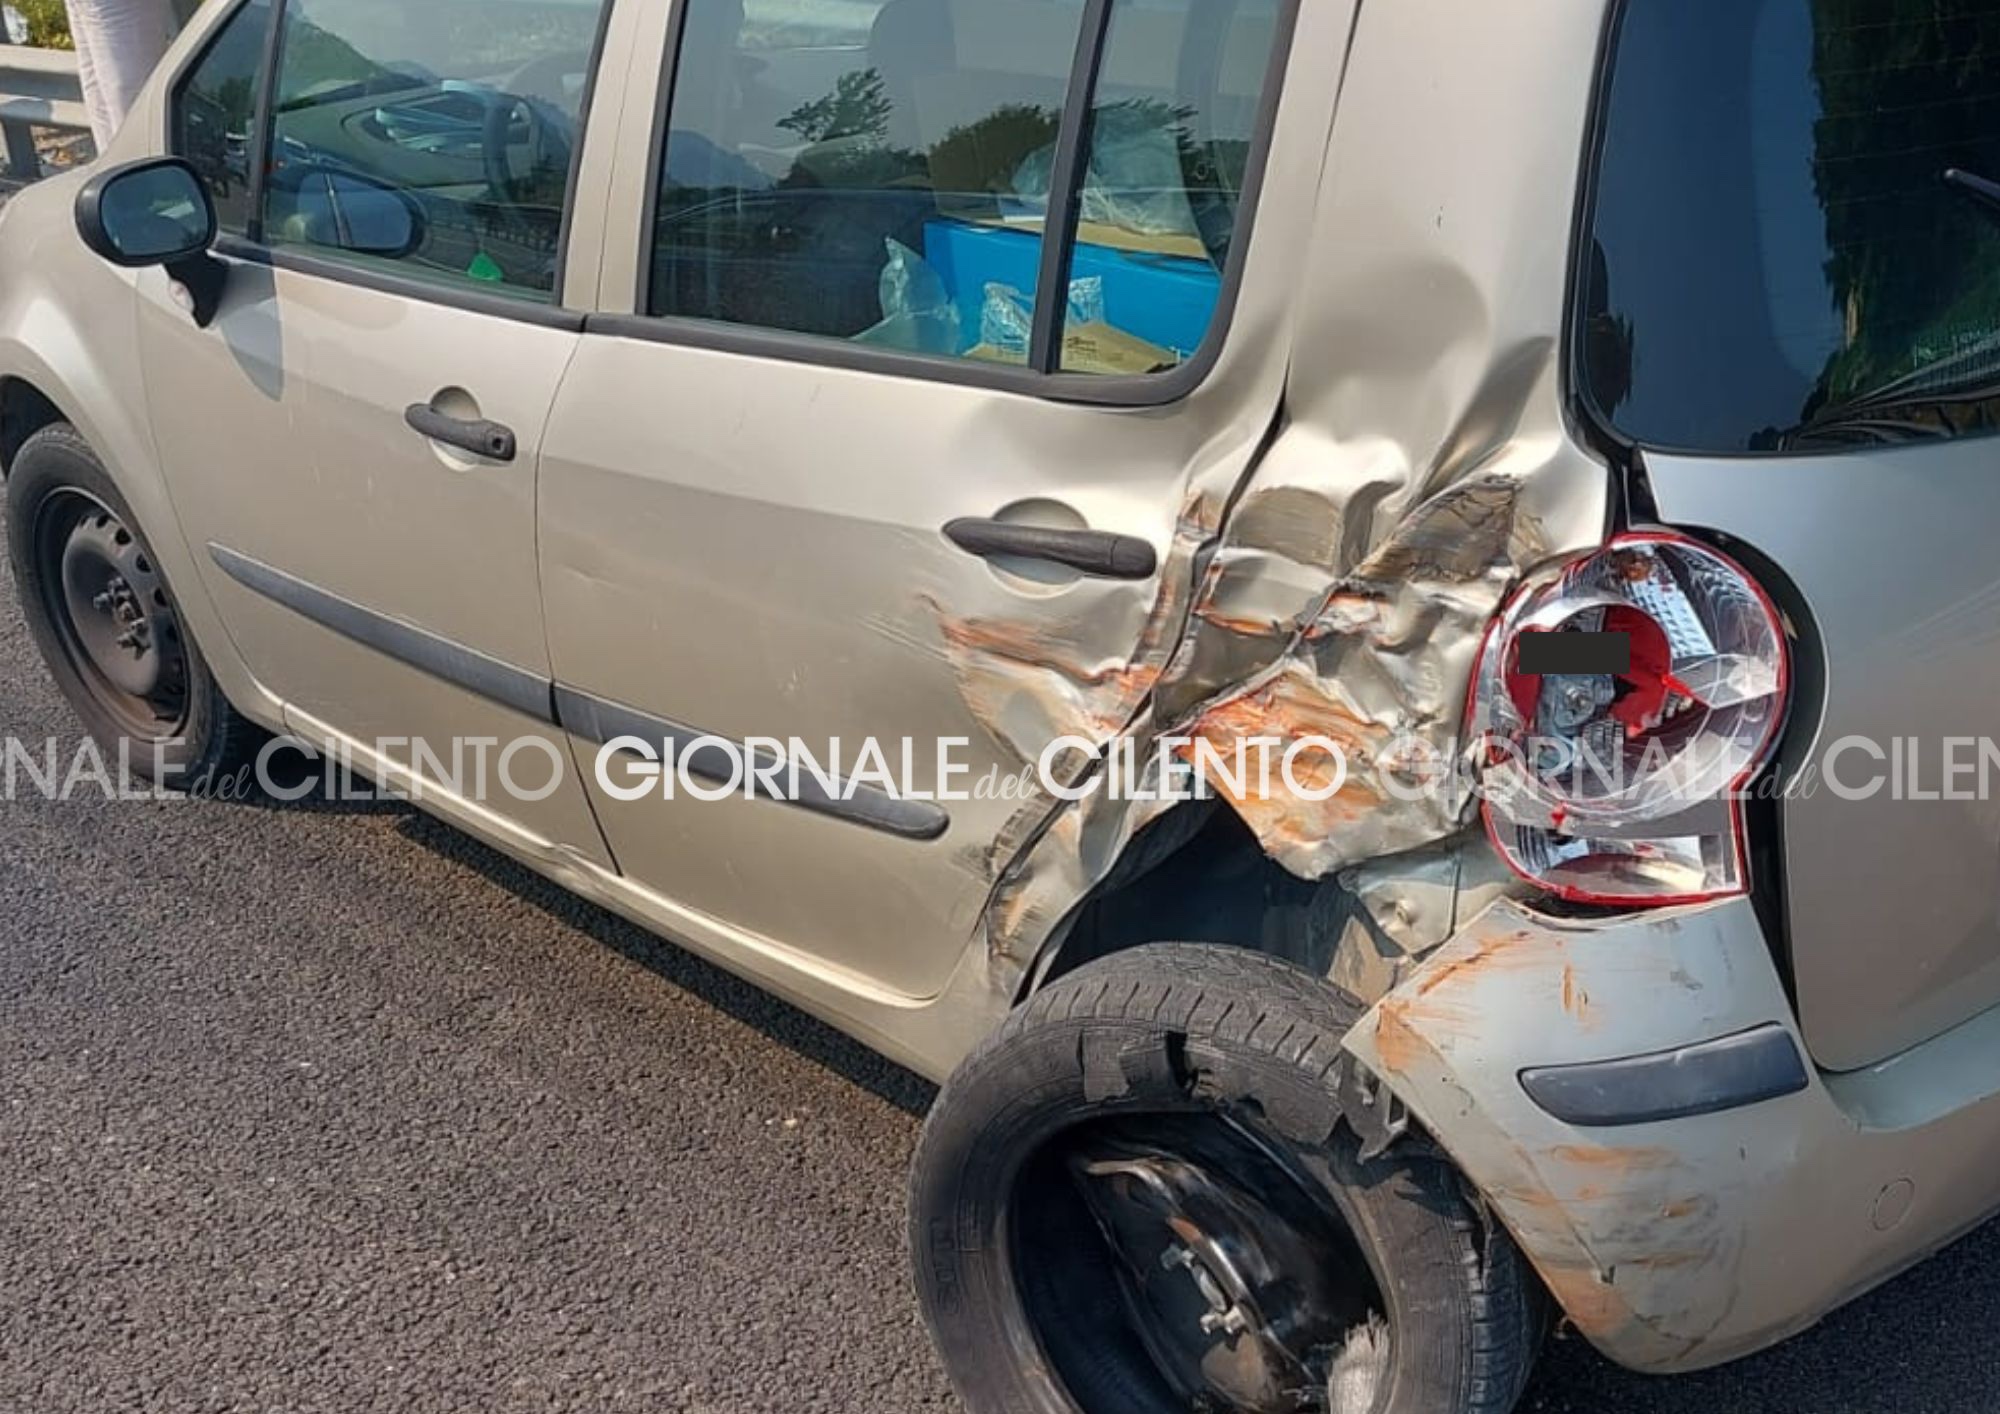 Incidente stradale sull’A2 del Mediterraneo, autista Cilento Bus evita impatto fatale